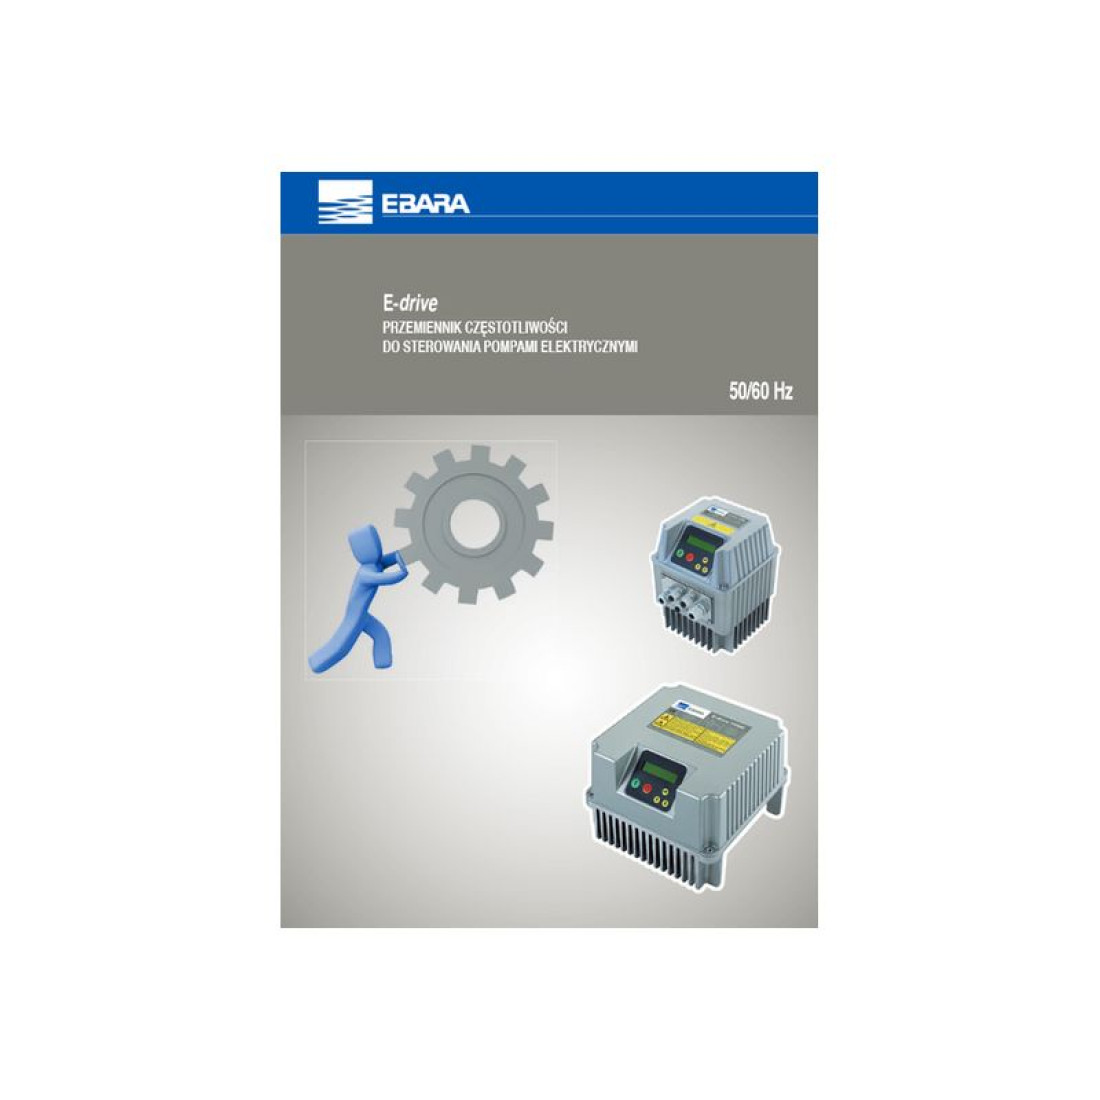 E-DRIVE - przemiennik częstotliwości do sterowania pompami elektrycznymi firmy EBARA